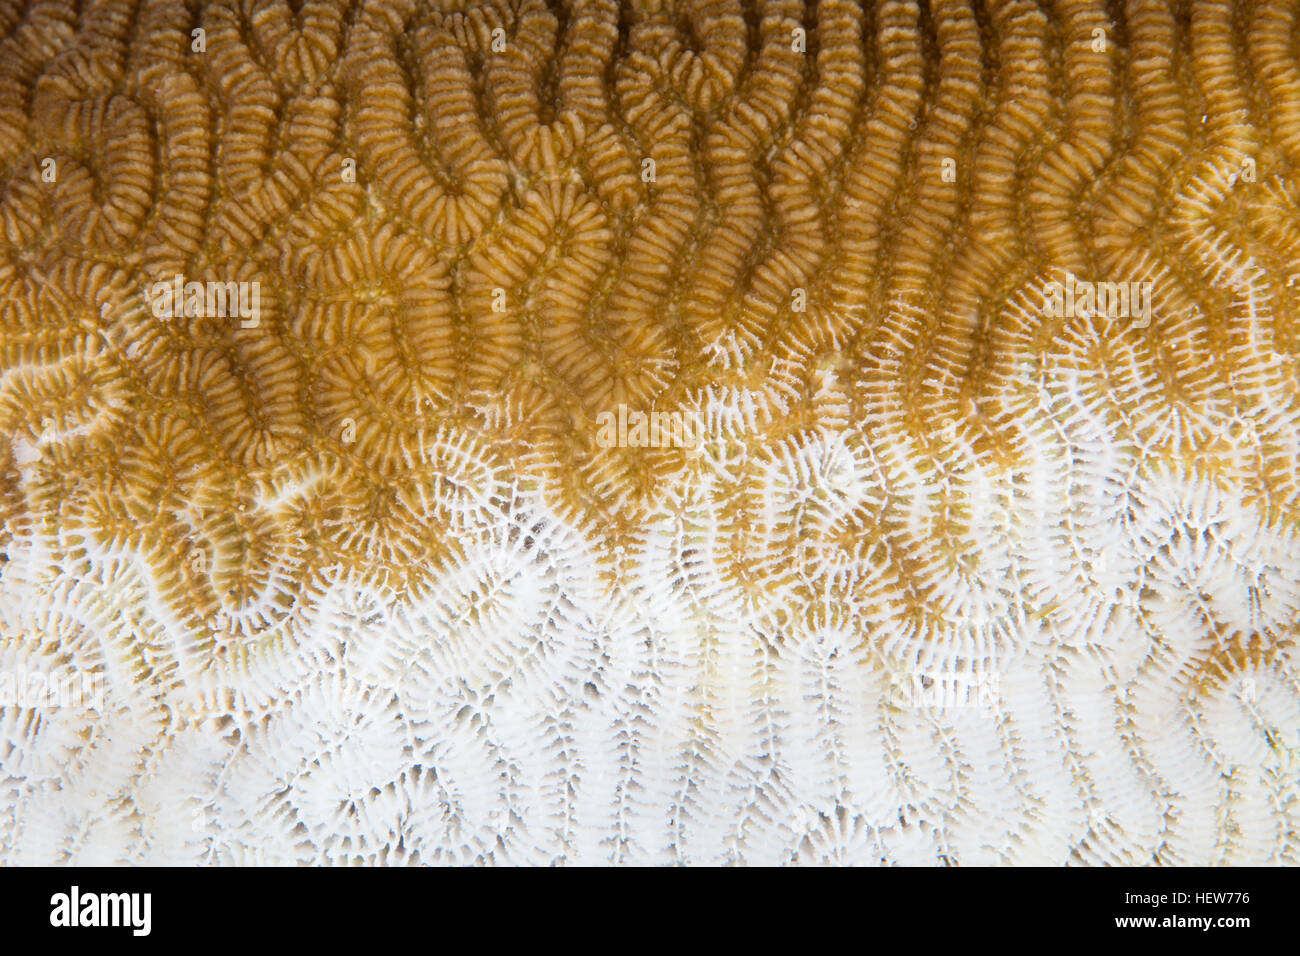 Una colonia de coral en el Pacífico ha comenzado a lejía, expulsando a sus zooxantelas simbióticas, debido a las altas temperaturas en la superficie del mar, Foto de stock